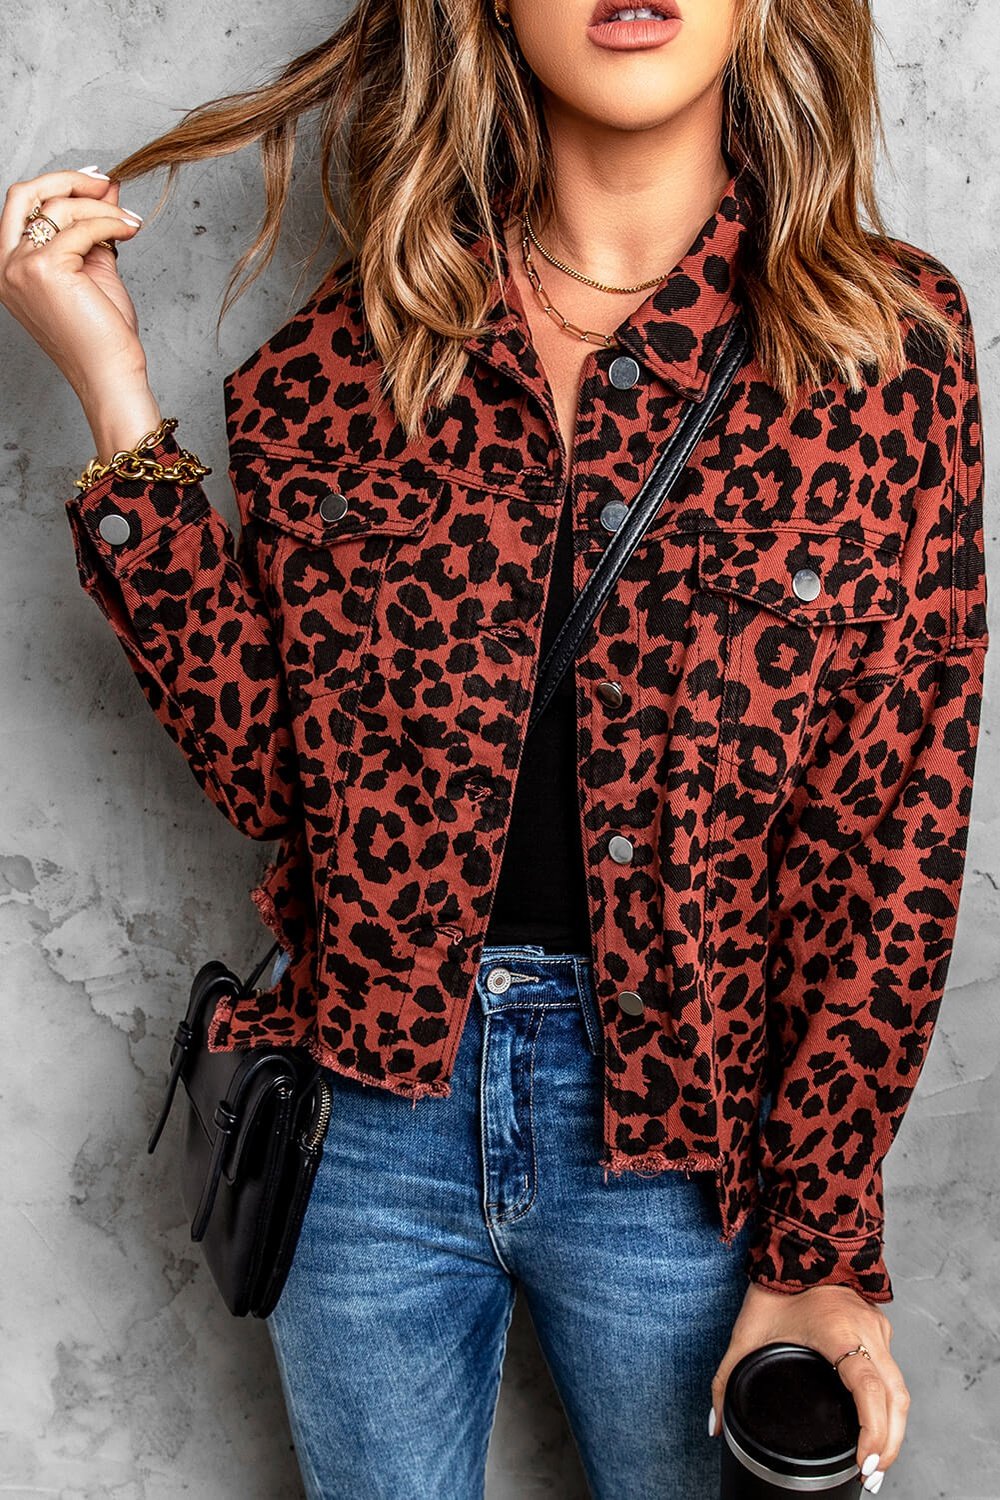 Leopard Print Raw Hem Jacket - Jackets - FITGGINS